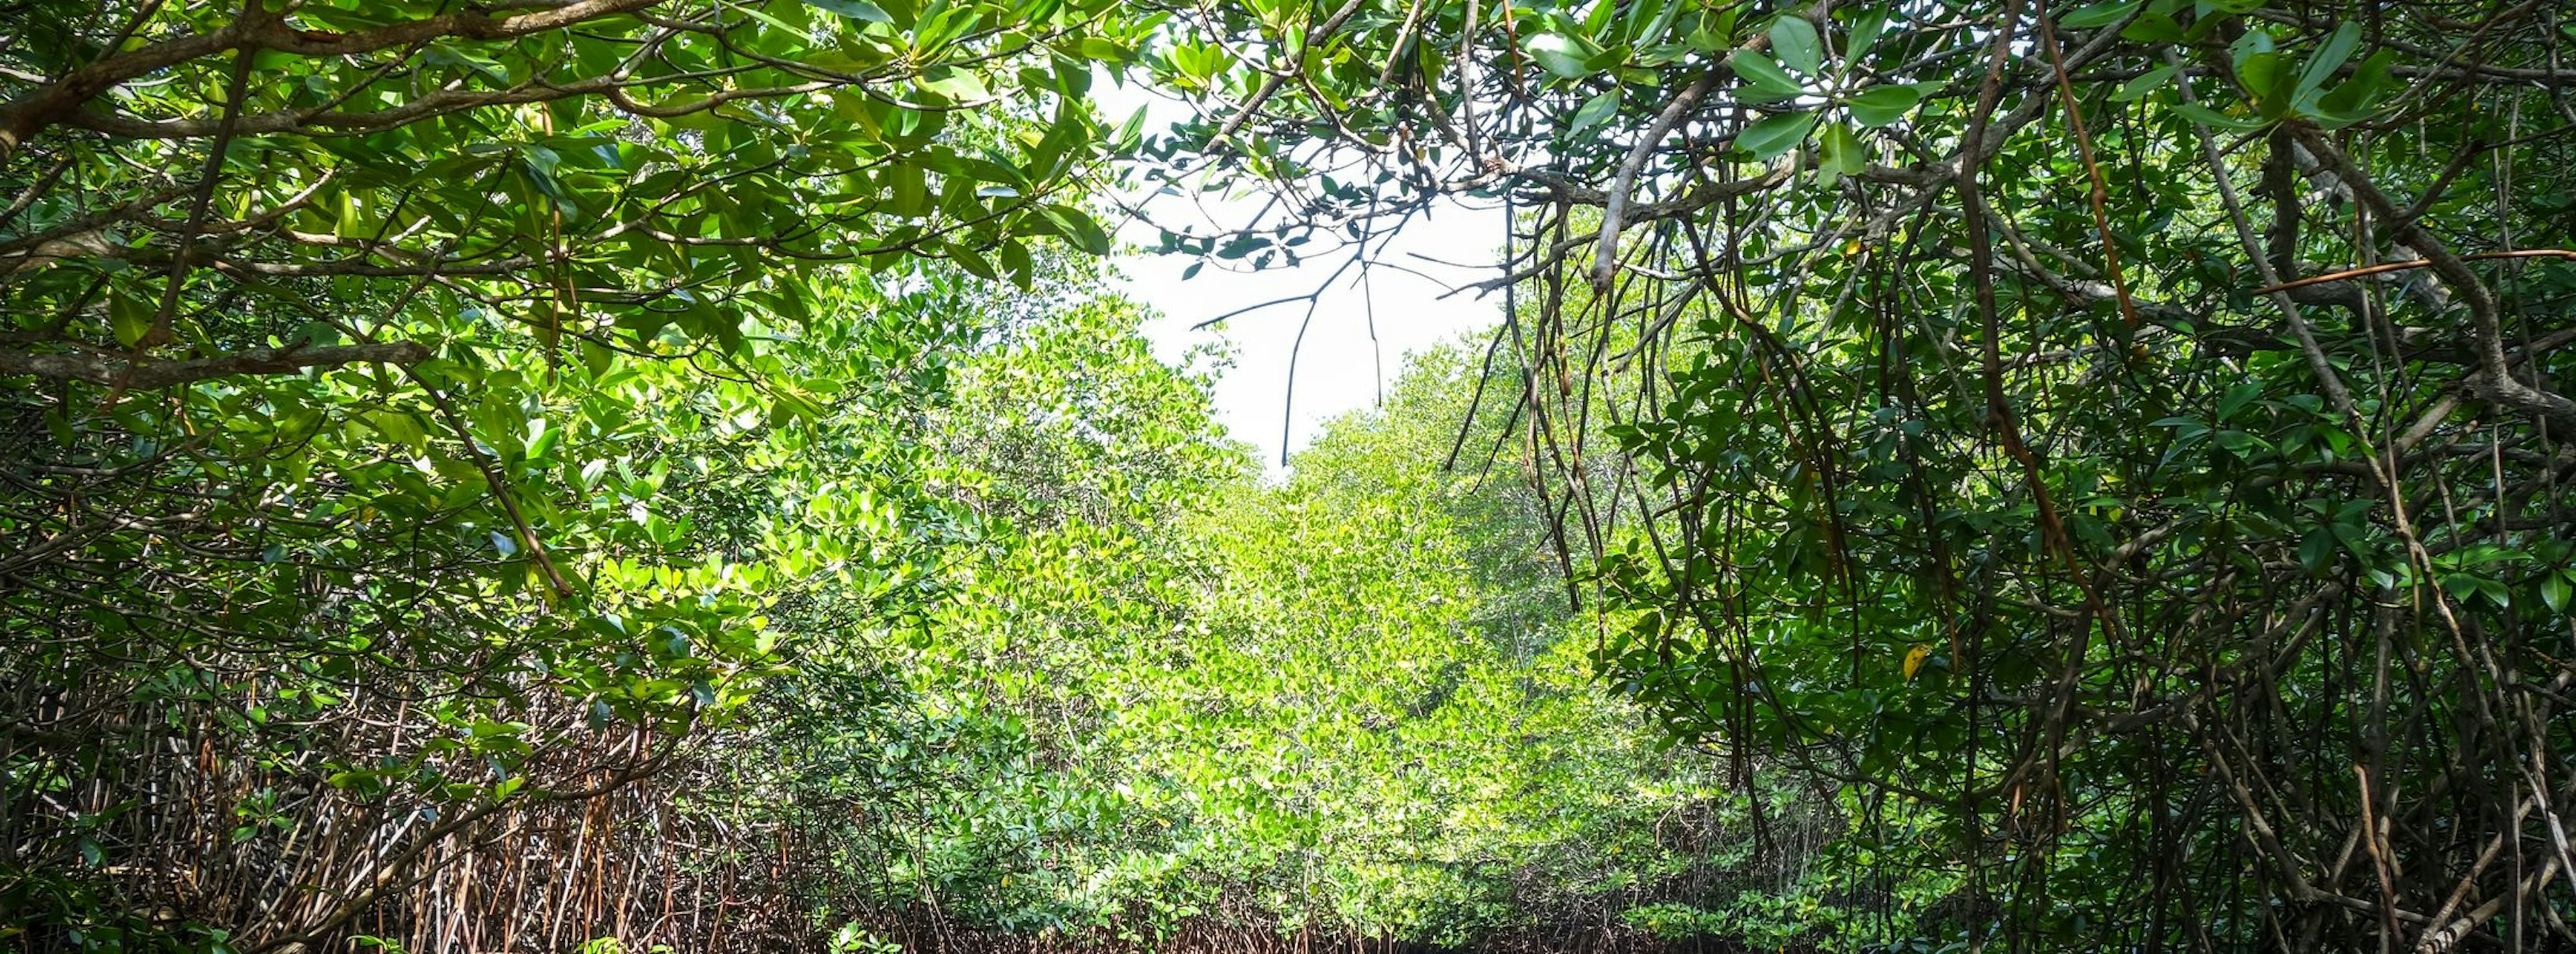 Mangrove in Nusa Lembongan island, Bali, Indonesia